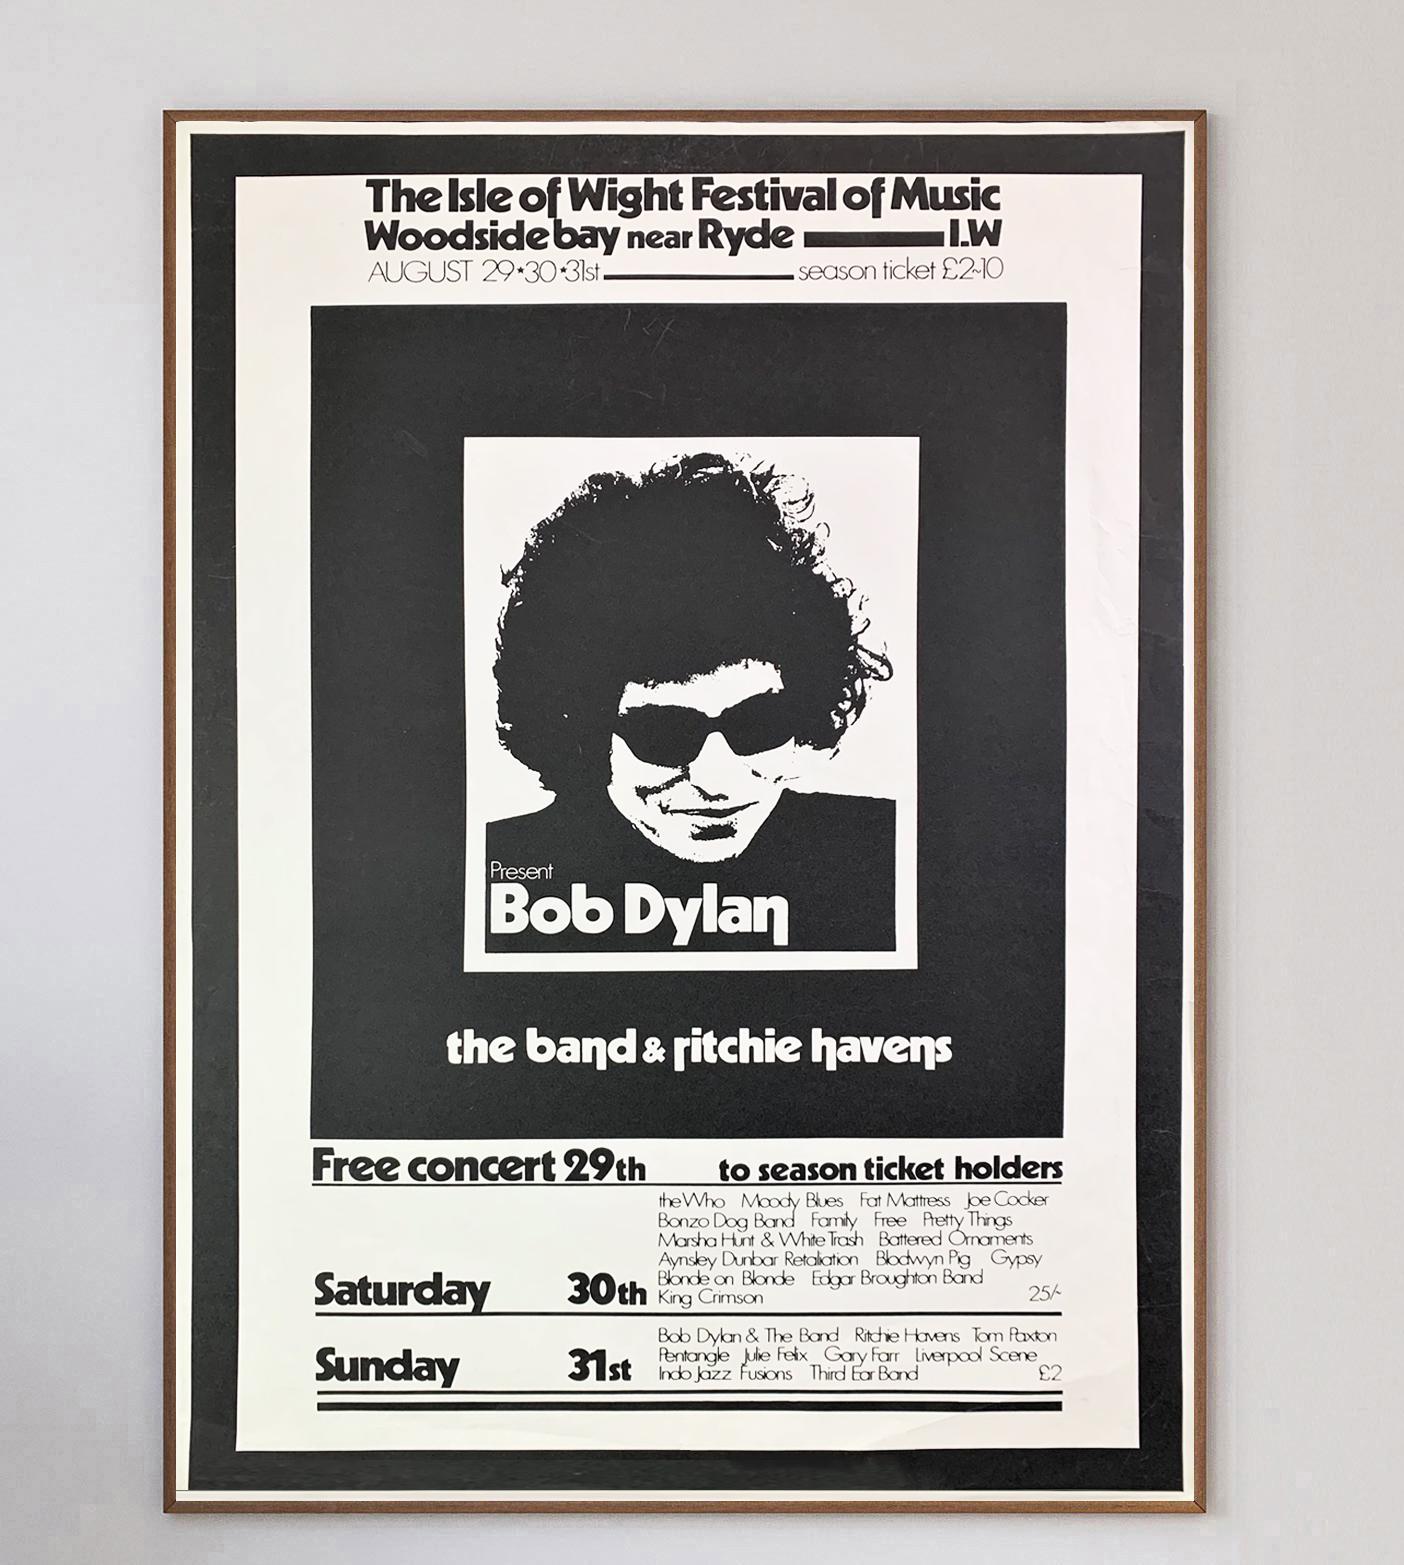 Superbe affiche sérigraphiée en noir profond créée pour promouvoir la deuxième édition du festival de l'île de Wight et la tête d'affiche principale - le seul et unique Bob Dylan, ainsi que les premières parties The Band et Ritchie Havens. Cette